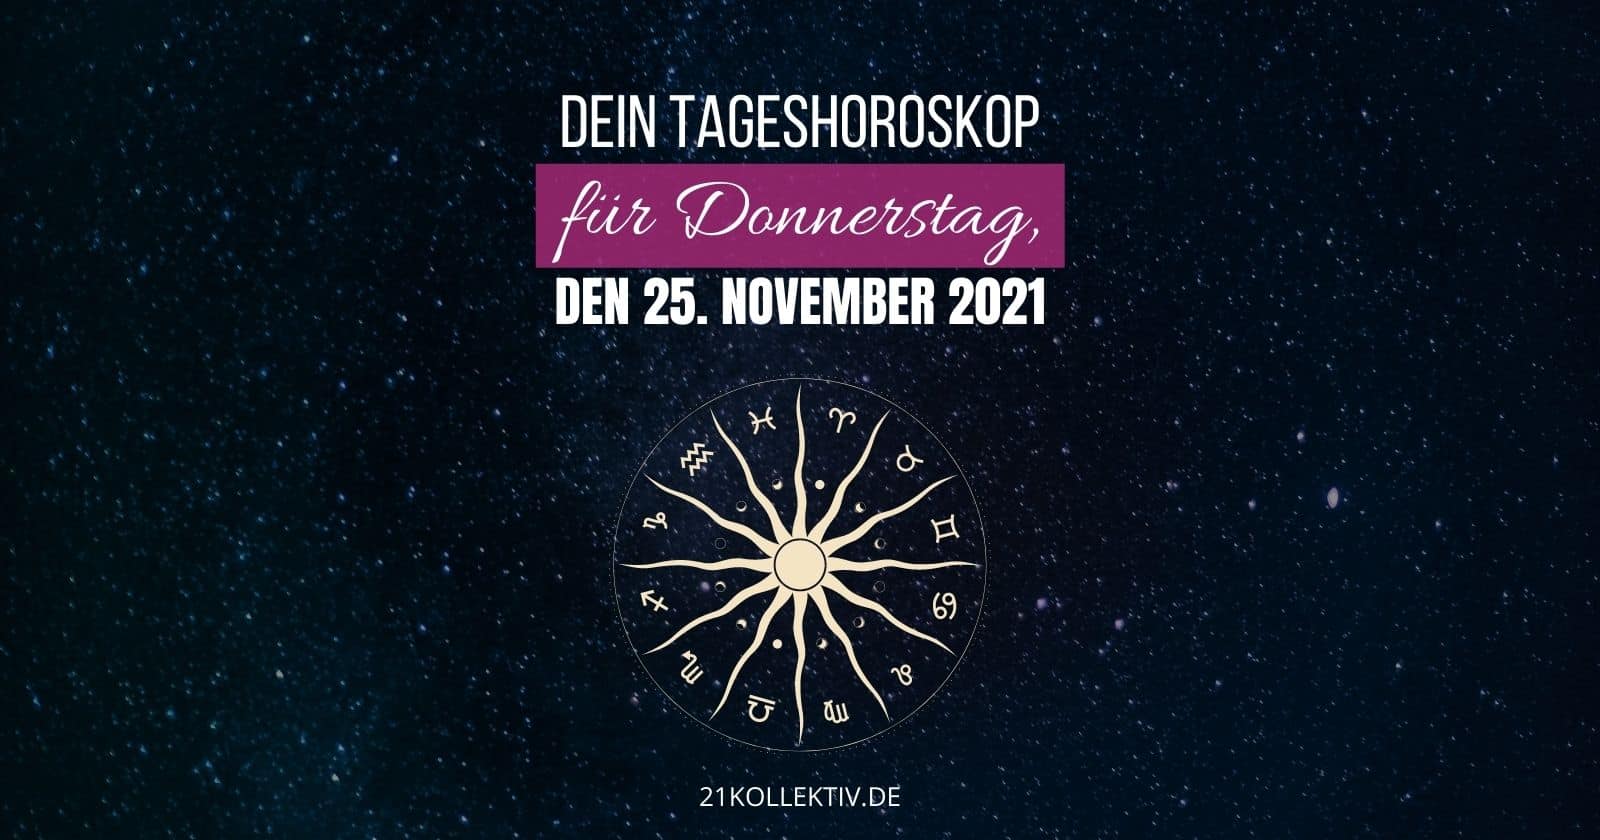 Dein Tageshoroskop für Donnerstag, den 25.11.2021